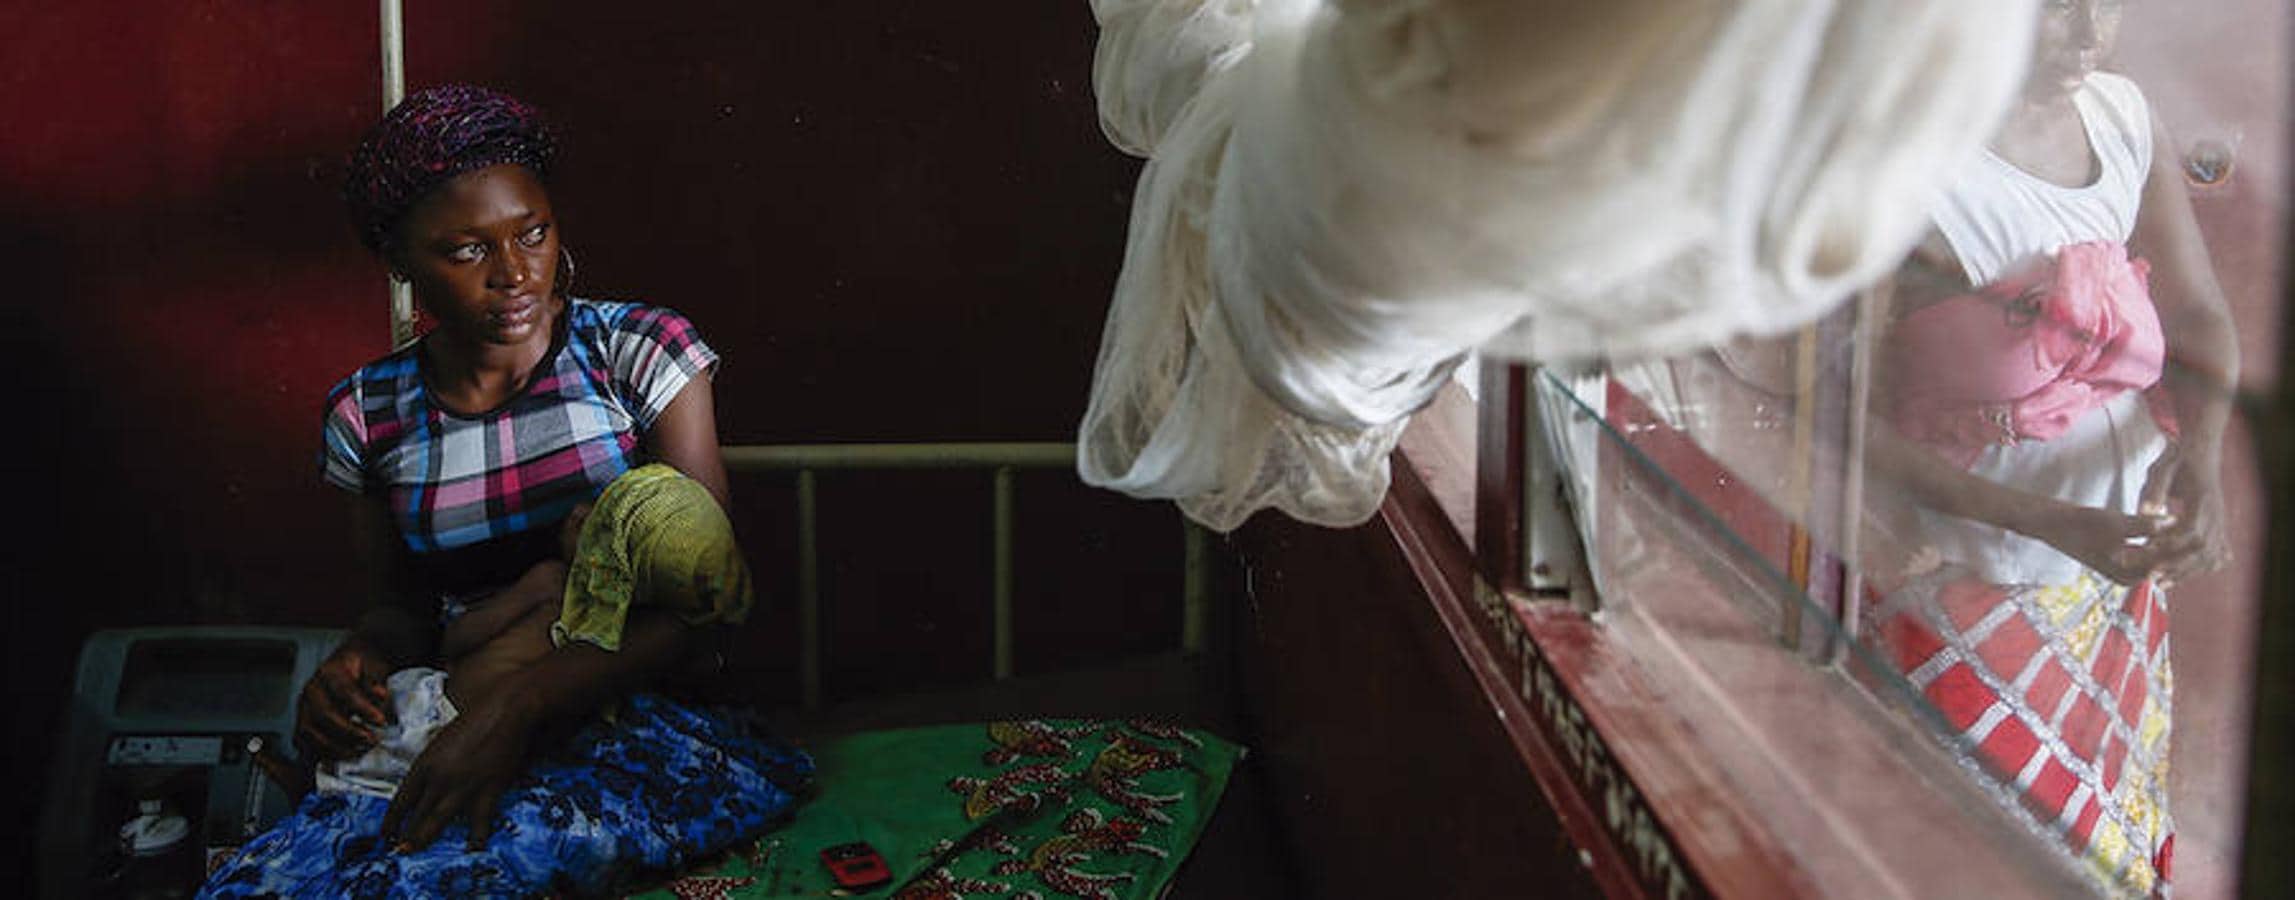 En este centro de recuperación nutricional de Bangui muchas mujeres procesan al mismo tiempo un doble trauma. El primero, el de no poder alimentar a sus hijos. Ver cómo dejan de ganar peso, pierden fuerza, las ganas de jugar y el apetito. El segundo, el de haber sido testigo de la ferocidad de los enfrentamientos entre la coalición Séléka y las milicias antibaraka que horrorizaron al mundo hace tres años.El tratamiento del estrés post-traumático es clave en Acción contra el Hambre para recuperar a un niño desnutrido. Muchas veces un choque brutal interrumpe la capacidad de producir leche. Una interrupción brusca de la lactancia puede precipitar a un bebé de menos de seis meses a un estado de desnutrición aguda en muy pocos días. Procesar el dolor y recuperar la confianza es crucial para retomar cuanto antes la capacidad de amamantar que podrá salvar al pequeño.